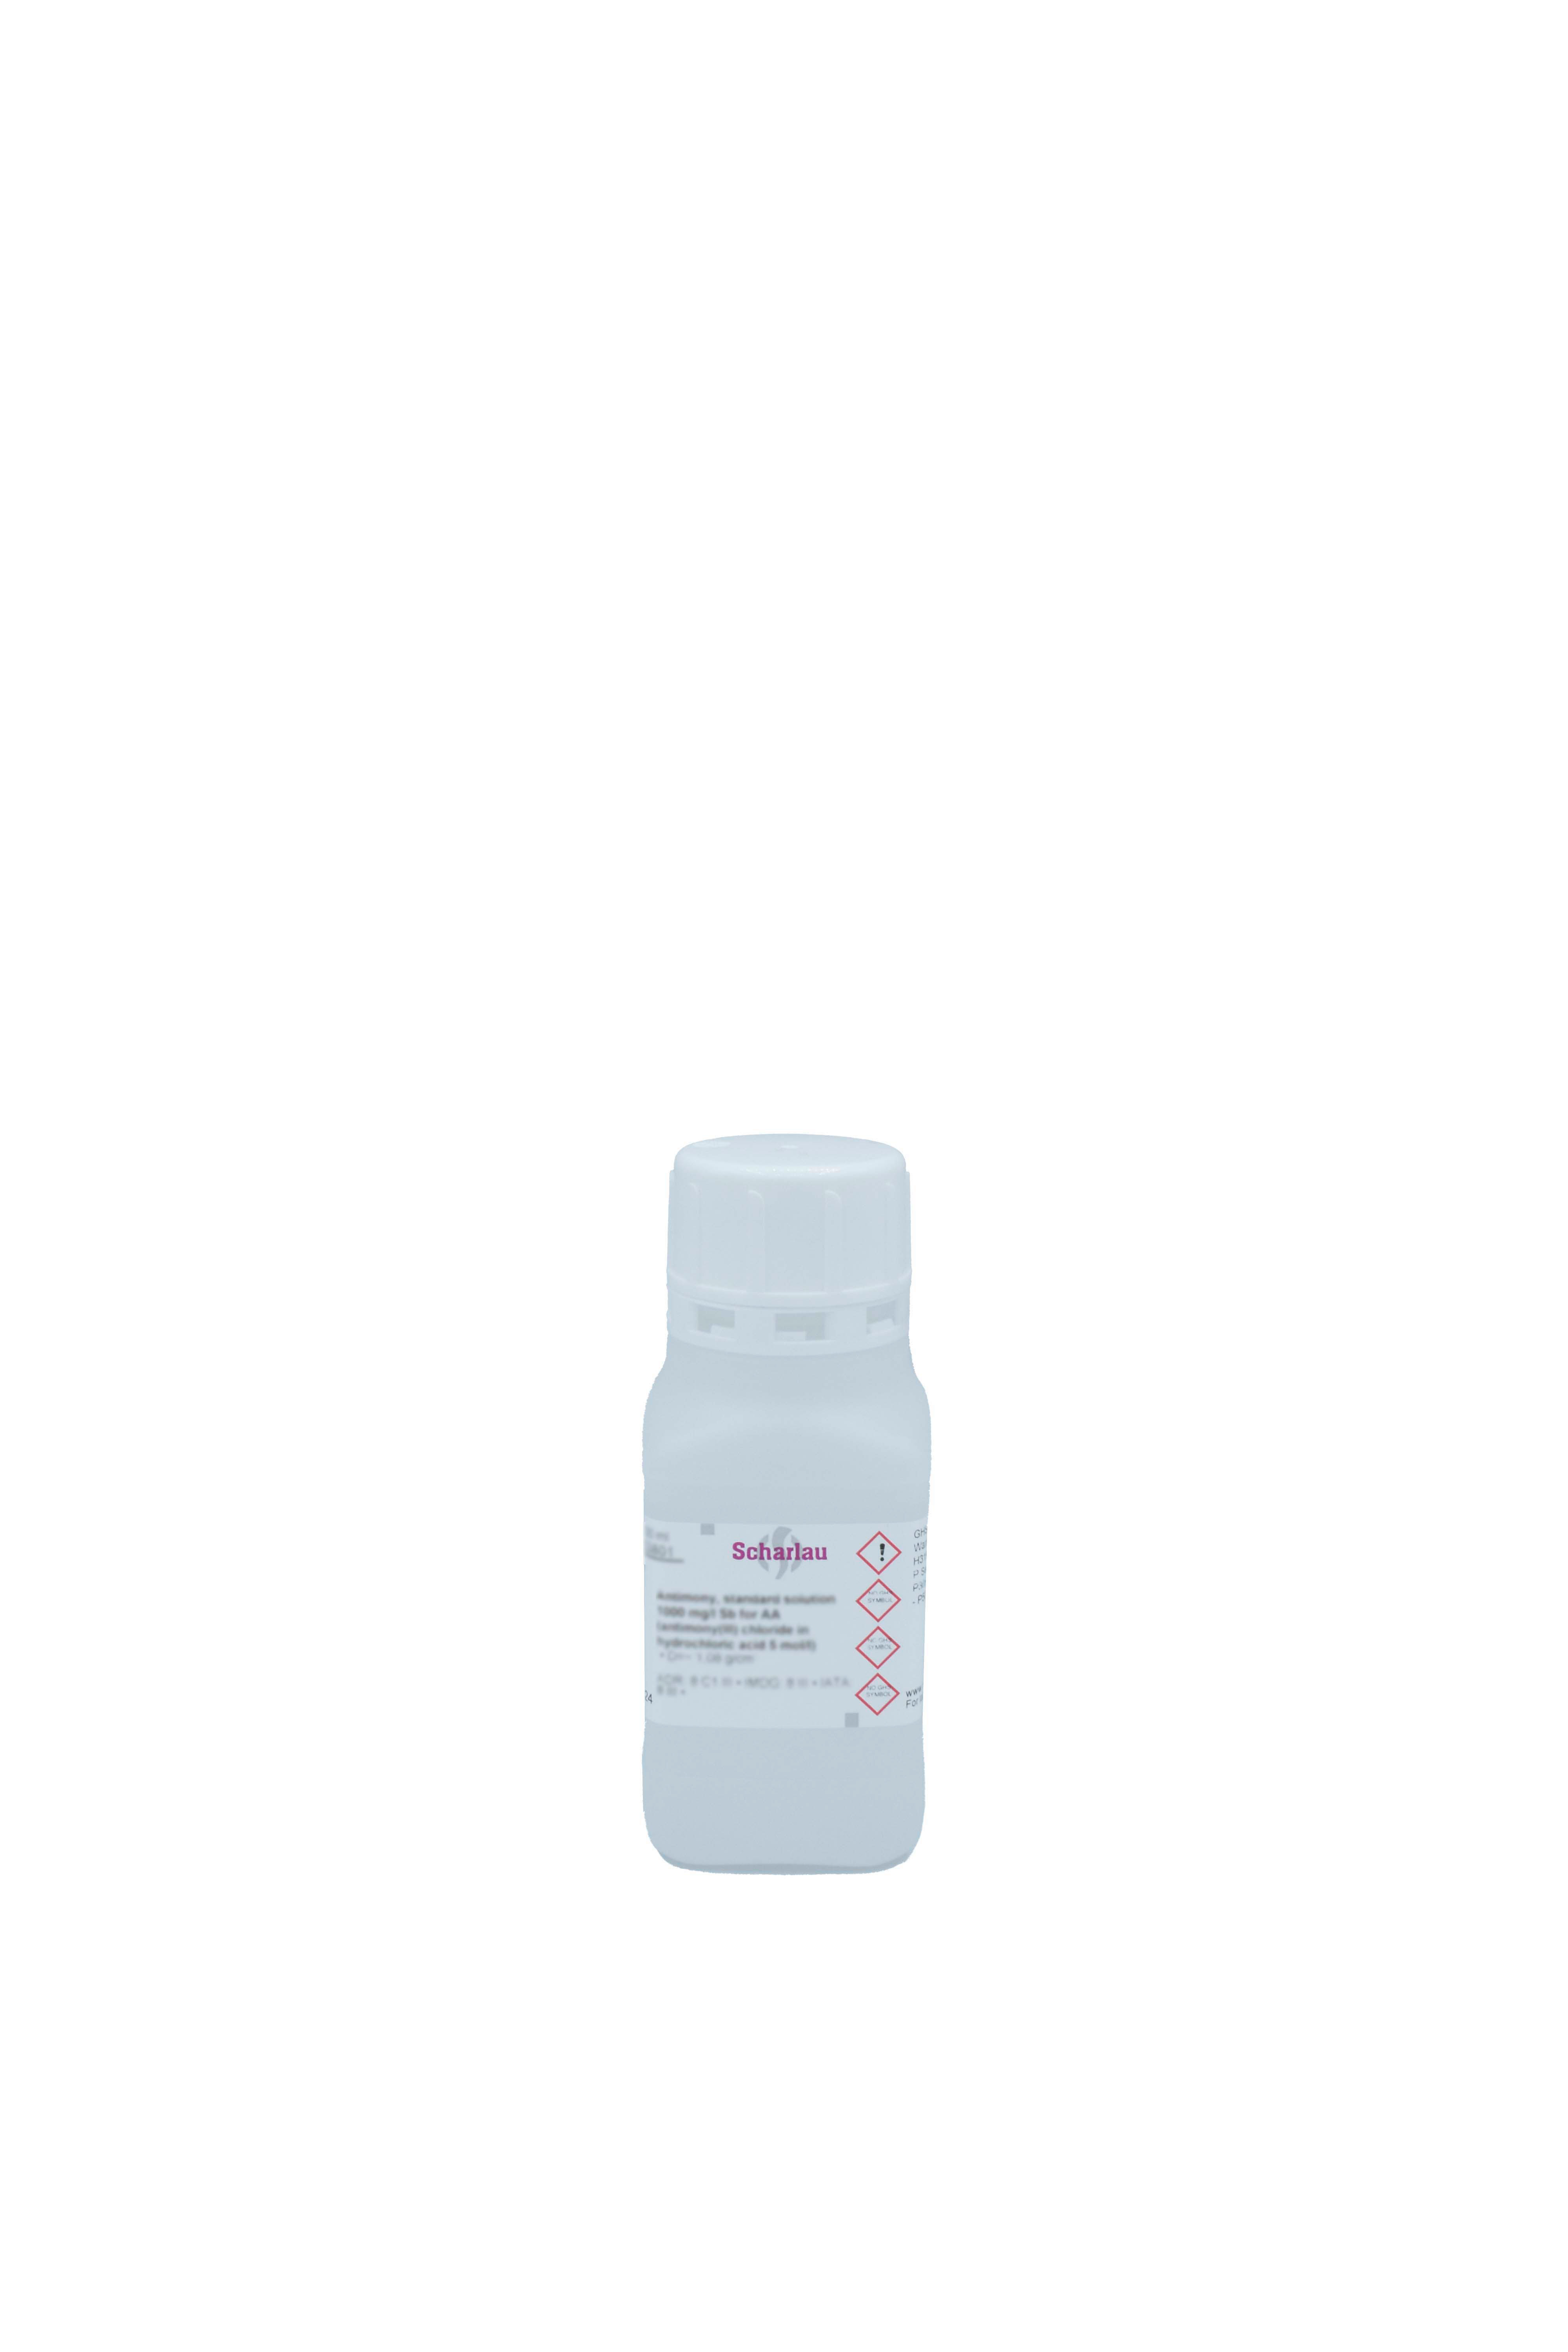 Antimonio, solución patrón 1000 mg/l Sb para AAs (antimonio(III) cloruro en ácido clorhídrico 5 mol/l)